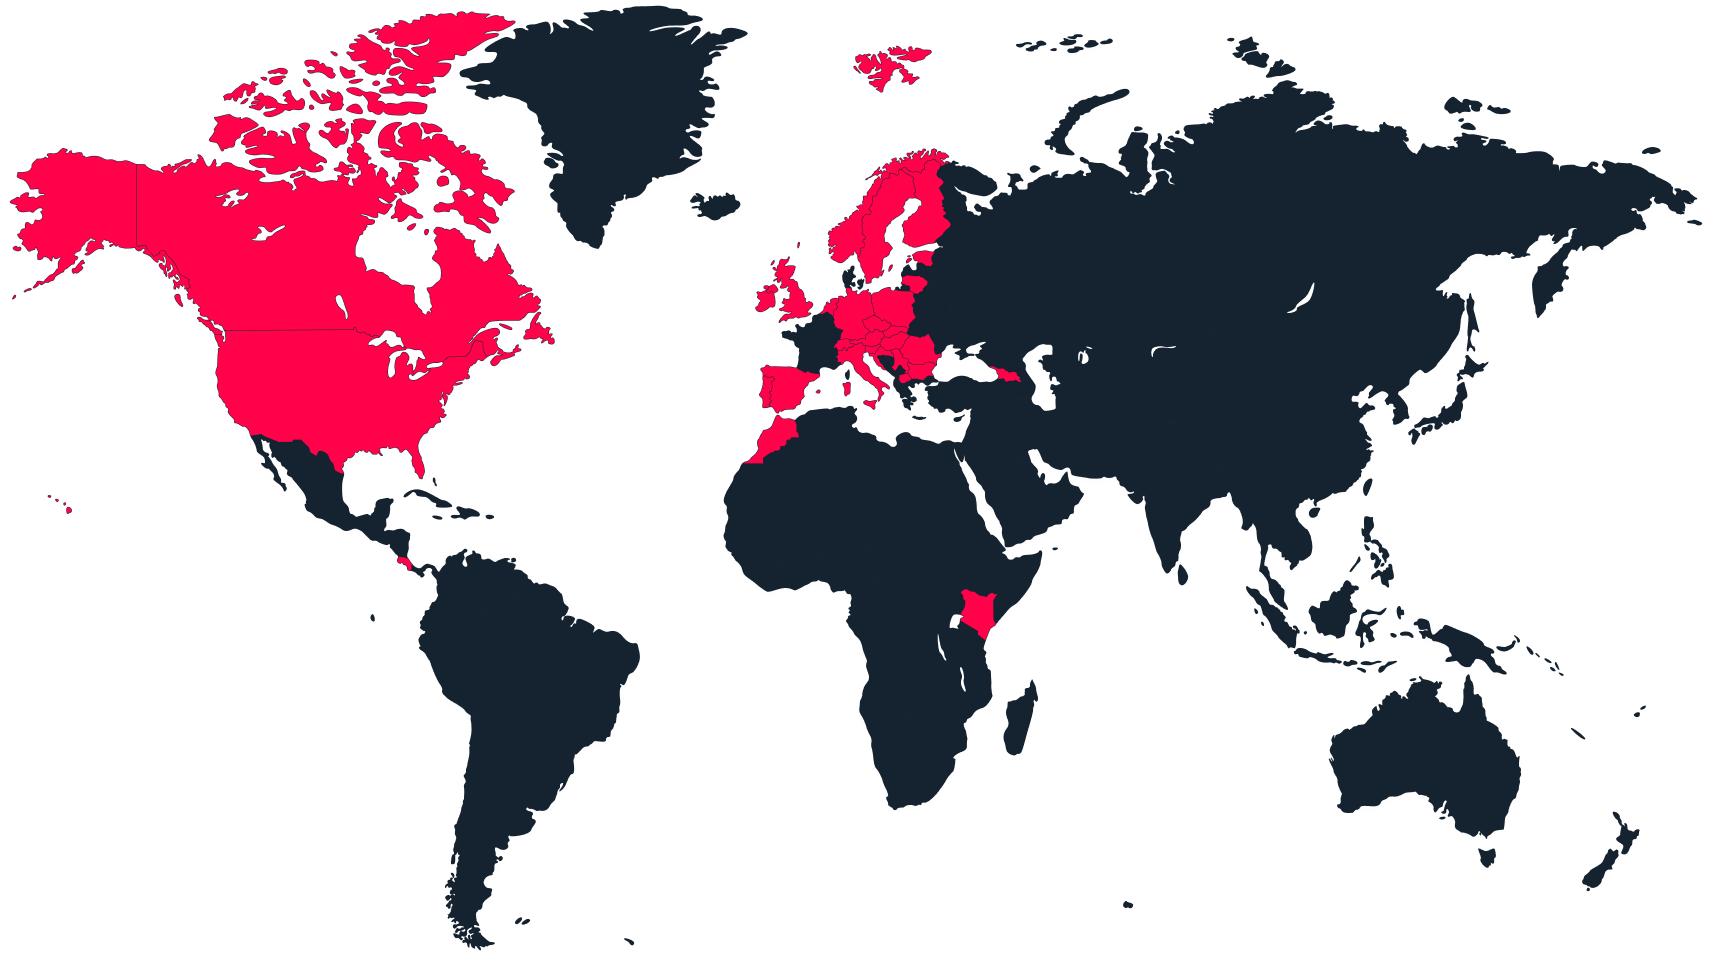 Um mapa-mundo com os países activos marcados a vermelho